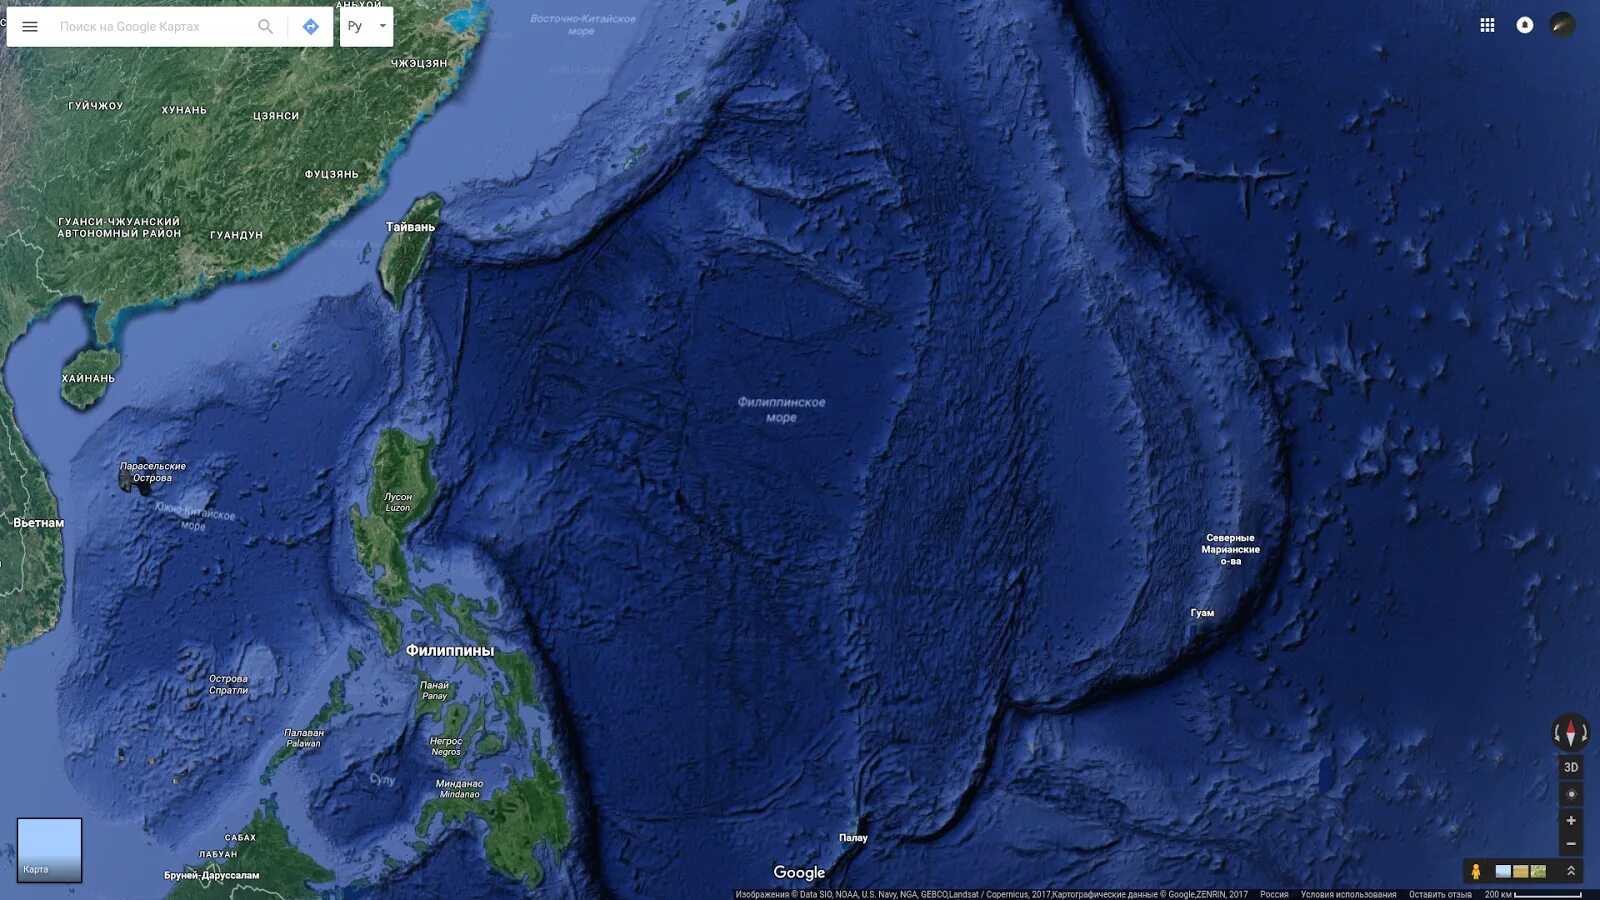 Тихий океан Марианский желоб. Марианская впадина рельеф дна. Филиппинское море Марианская впадина. Марианская впадина глубина 11022.